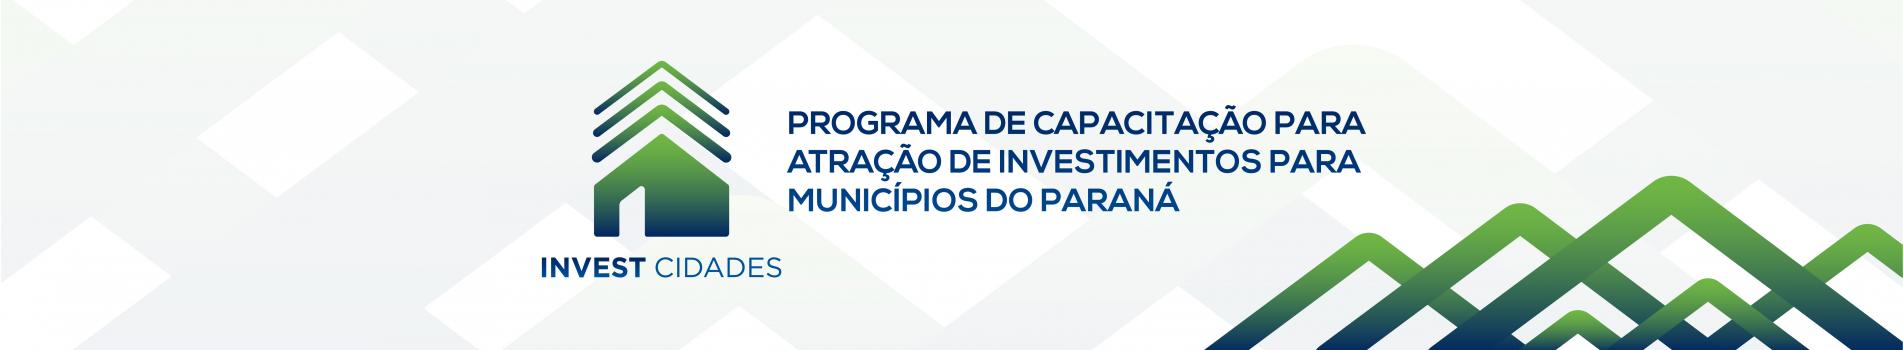 Programa de capacitação para atração de investimentos para municípios do Paraná